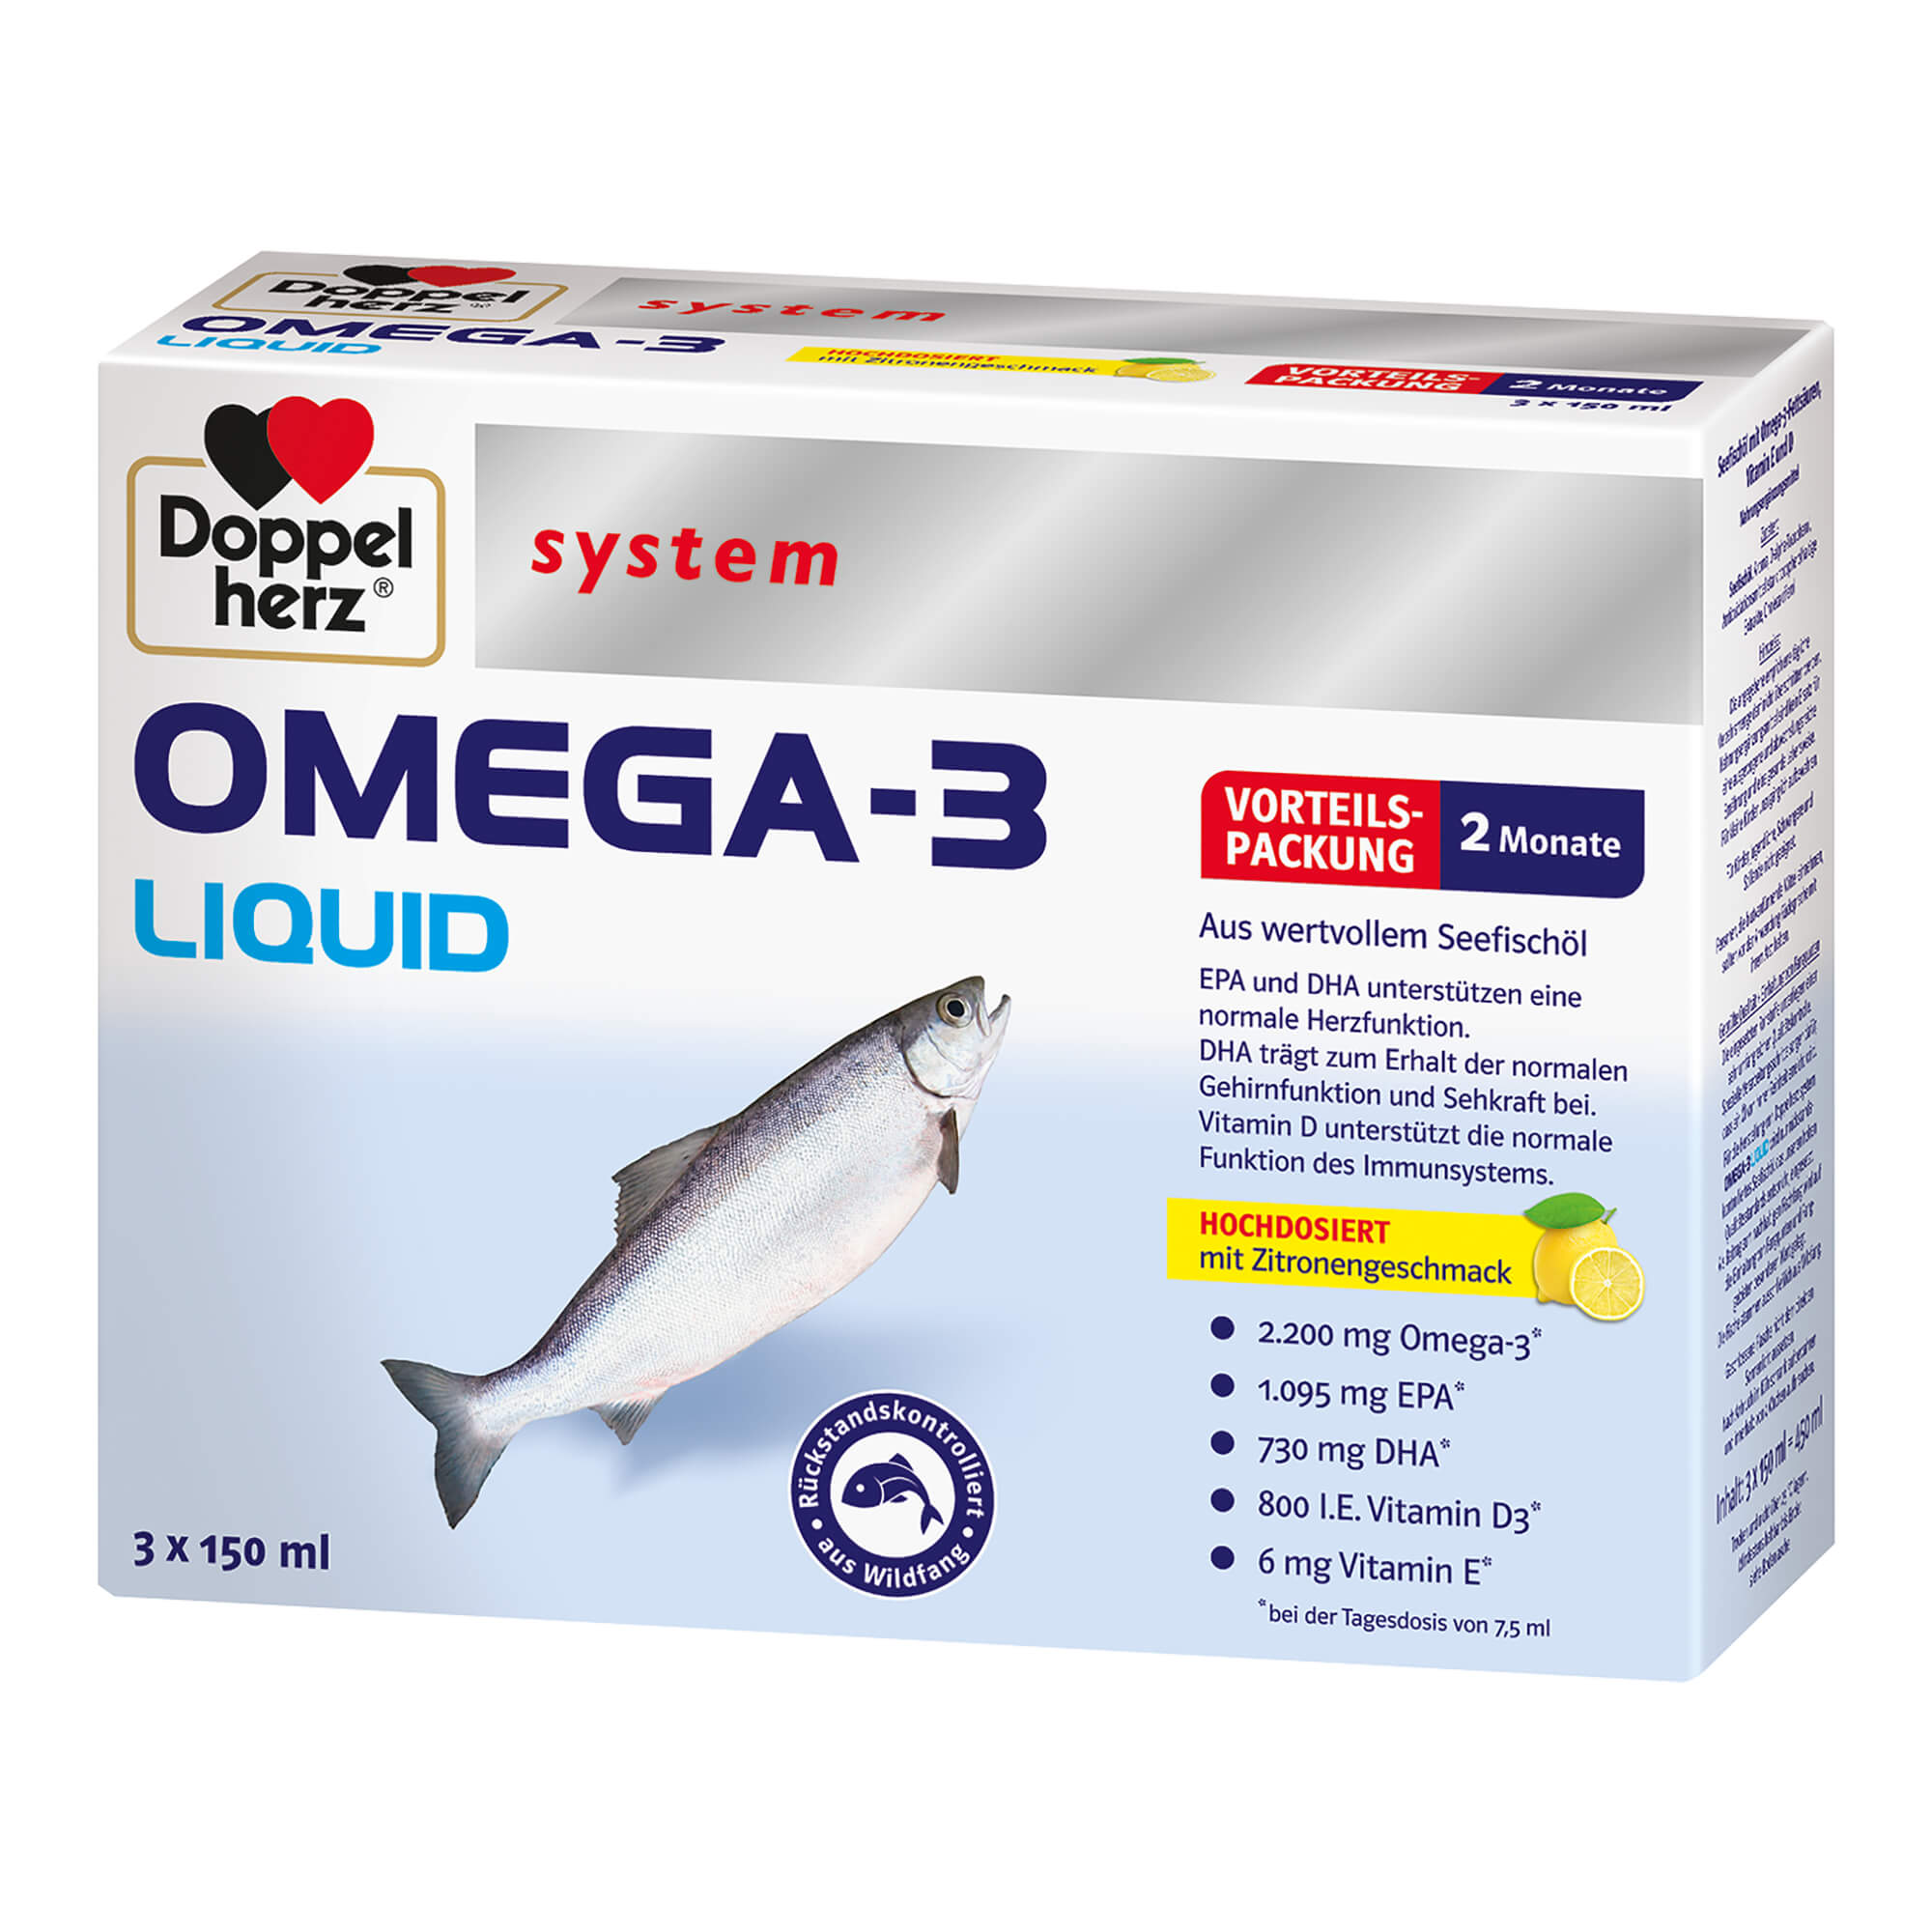 Nahrungsergänzungsmittel aus wertvollem Seefischöl mit Omega-3-Fettsäuren für Herz, Gehirn und Augen plus Vitamin E und D. Mit Zitronengeschmack.